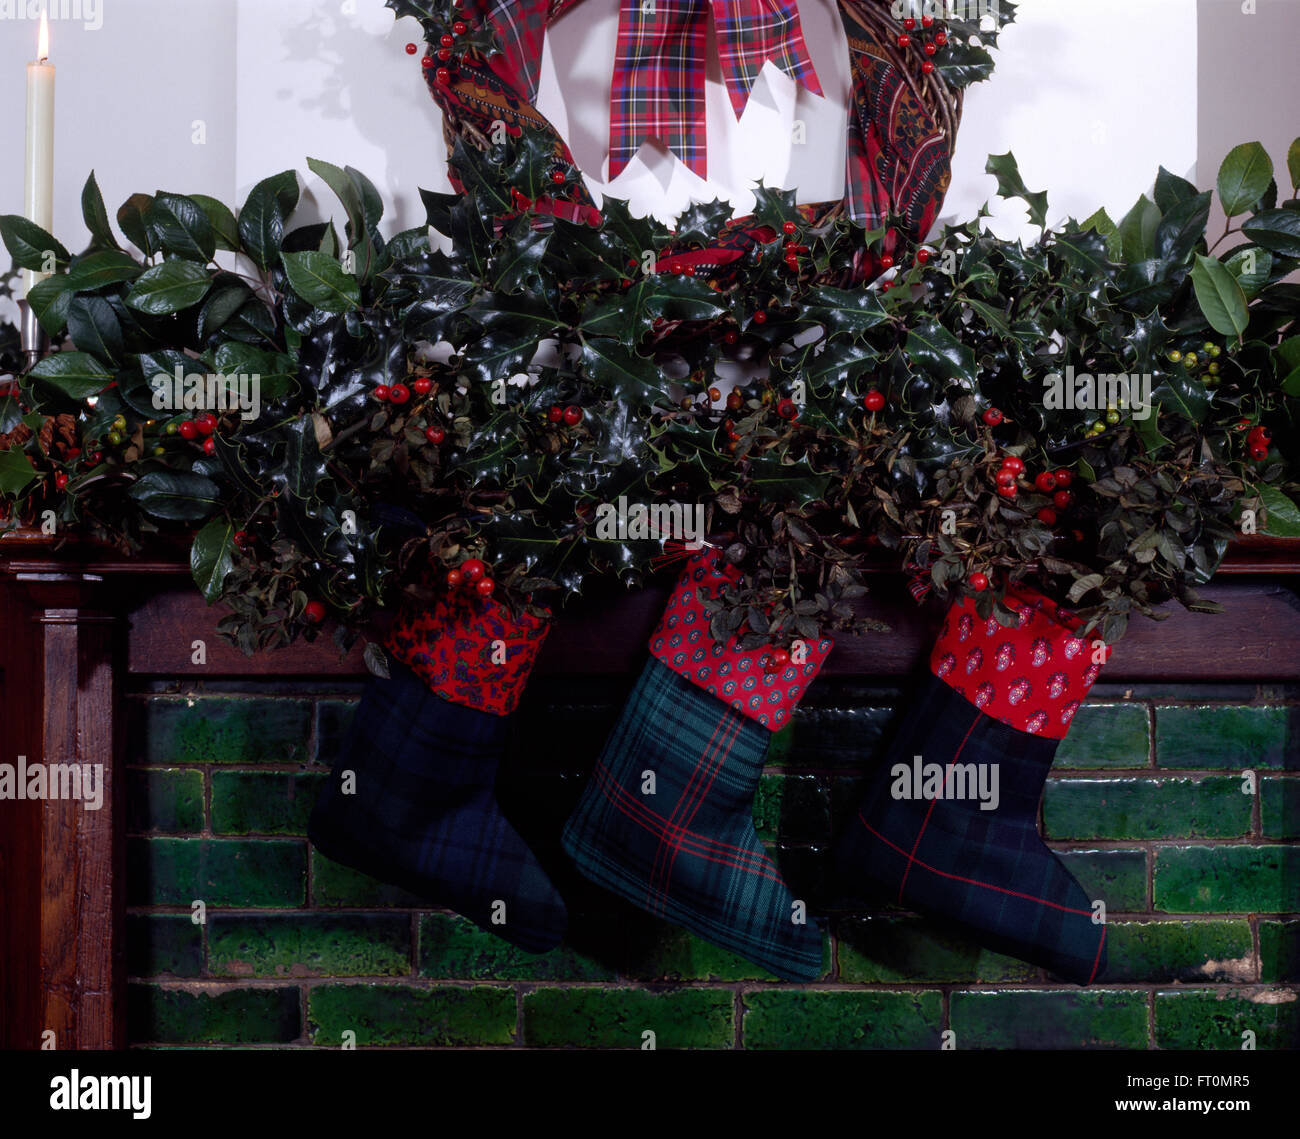 Accueil faites des bas de Noël suspendu à une cheminée avec une guirlande de feuillage vert et de houx frais Banque D'Images